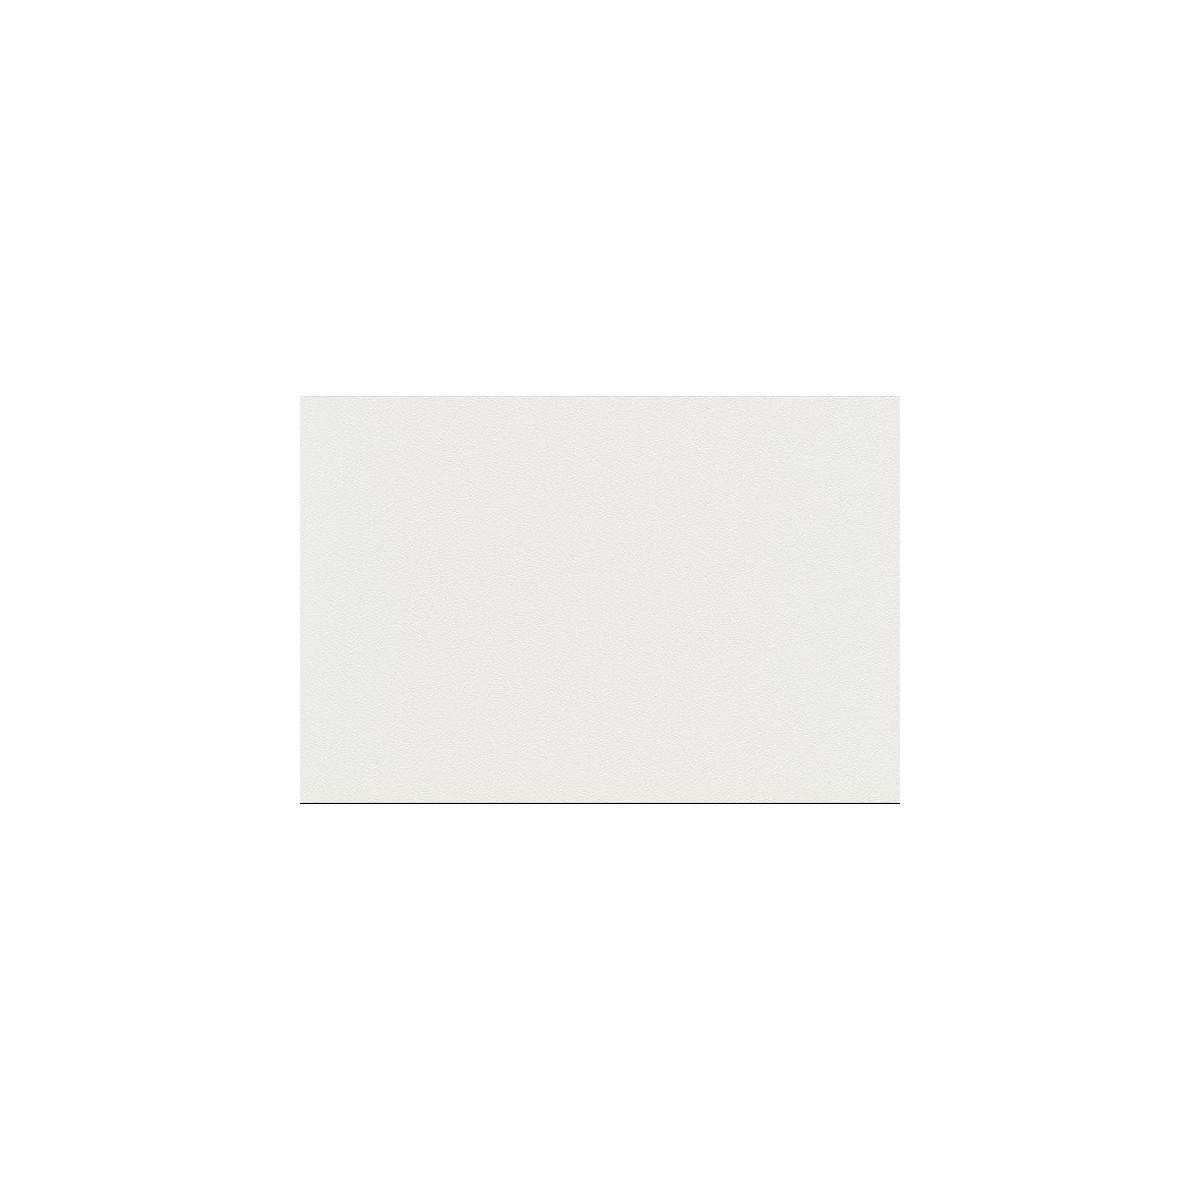 plain white embossed wallpaper 2016 - White Brick Wallpaper